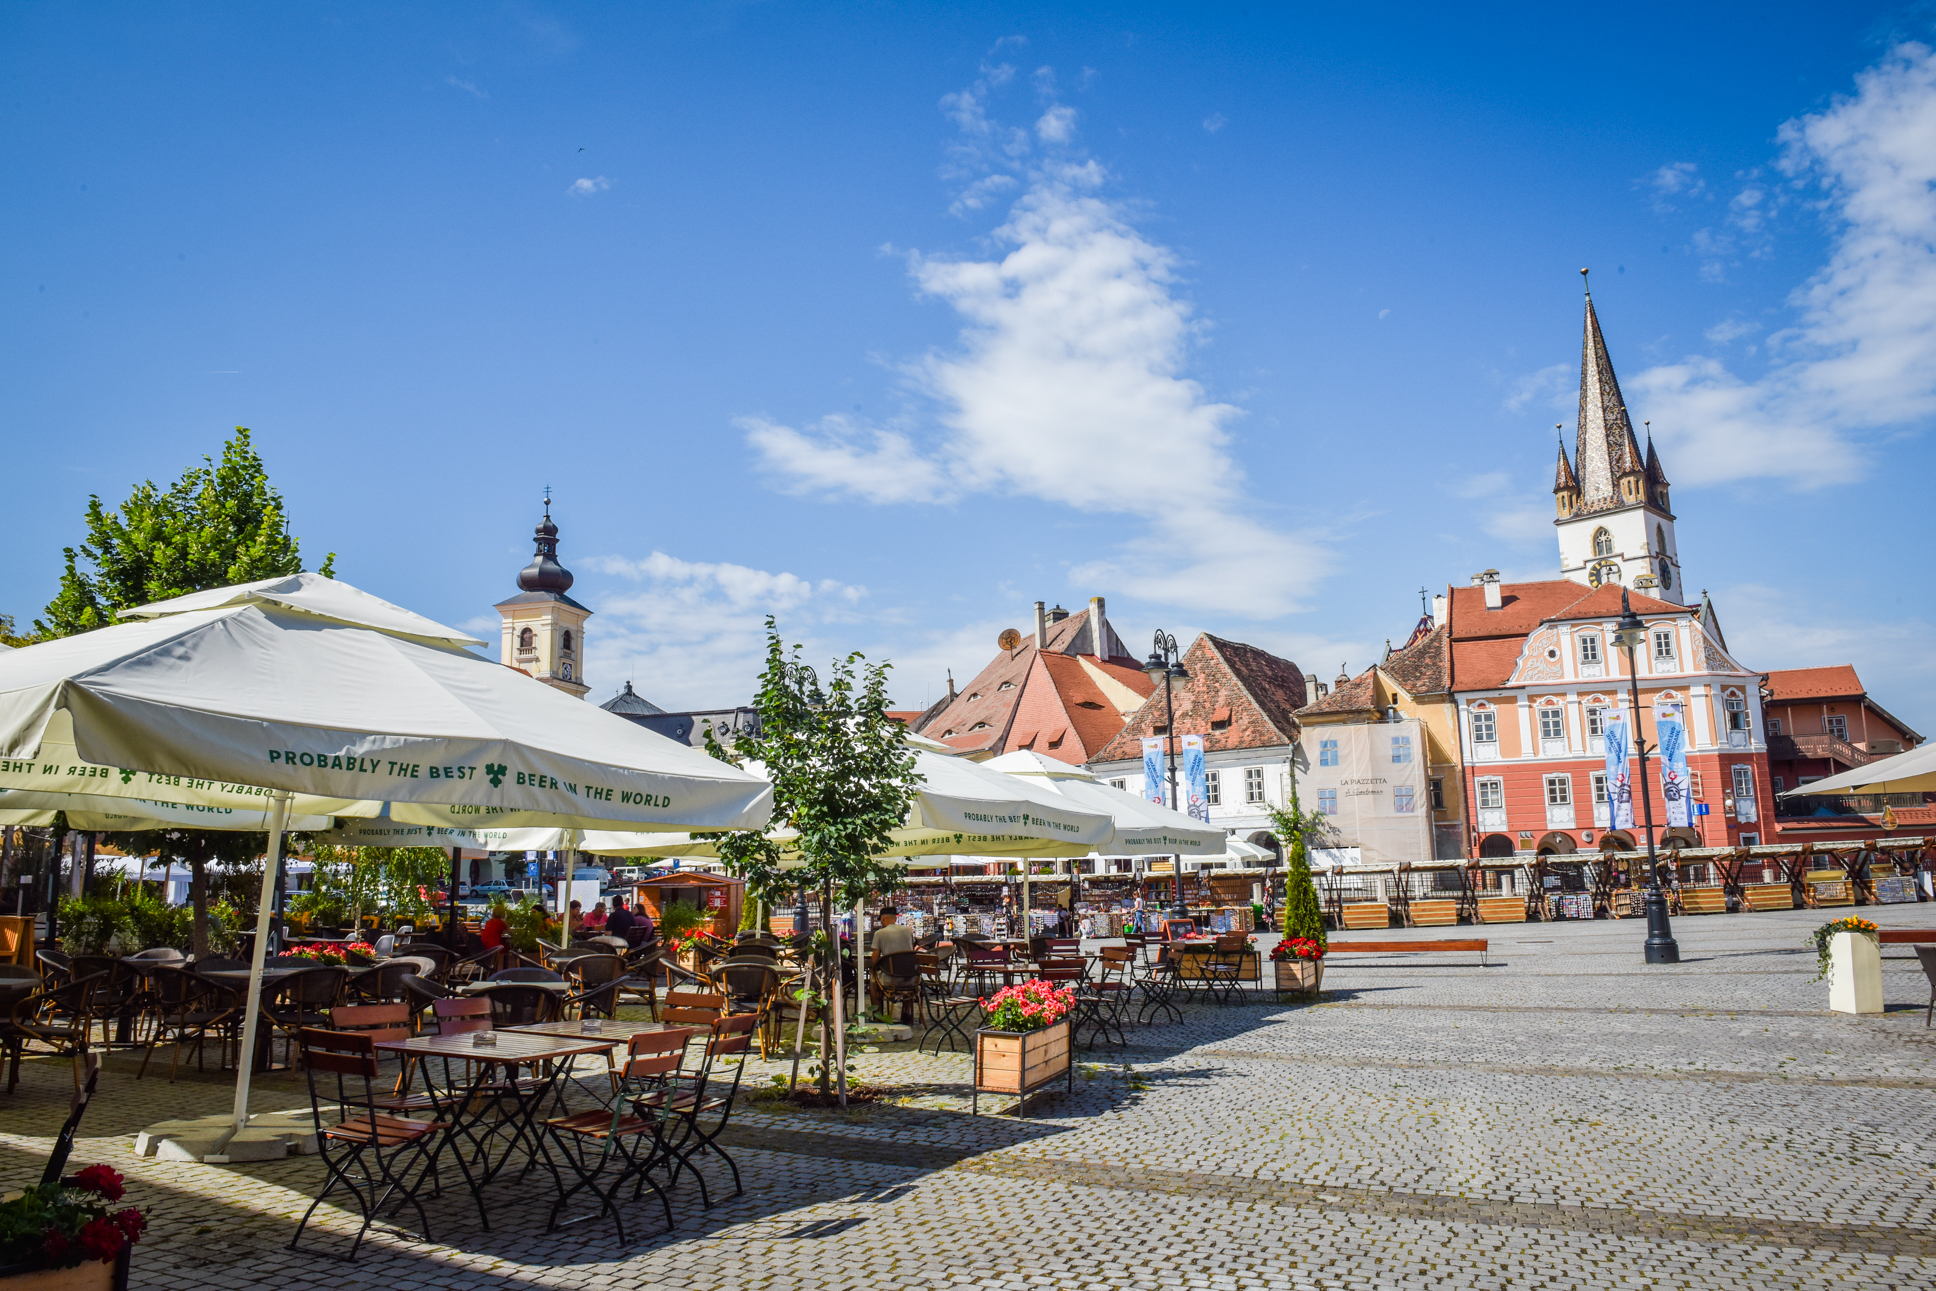 Turismul în Sibiu: Au dispărut străinii. Pe lângă problema războiului, ”orașul nostru nu e asimilat cu un loc în care să poți face o baie”